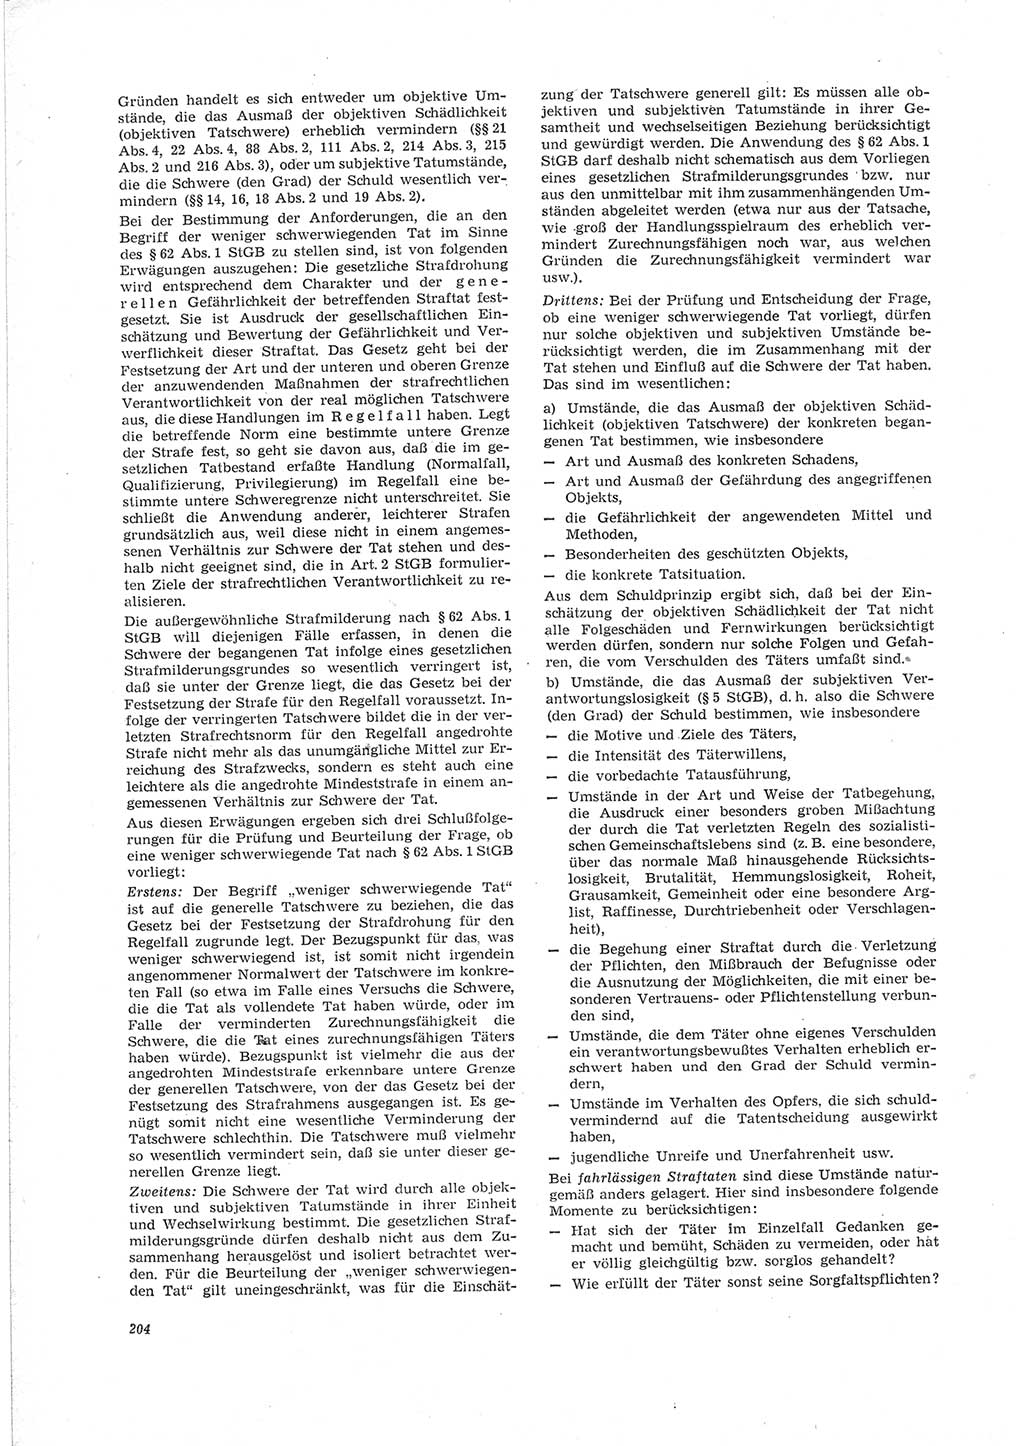 Neue Justiz (NJ), Zeitschrift für Recht und Rechtswissenschaft [Deutsche Demokratische Republik (DDR)], 23. Jahrgang 1969, Seite 204 (NJ DDR 1969, S. 204)